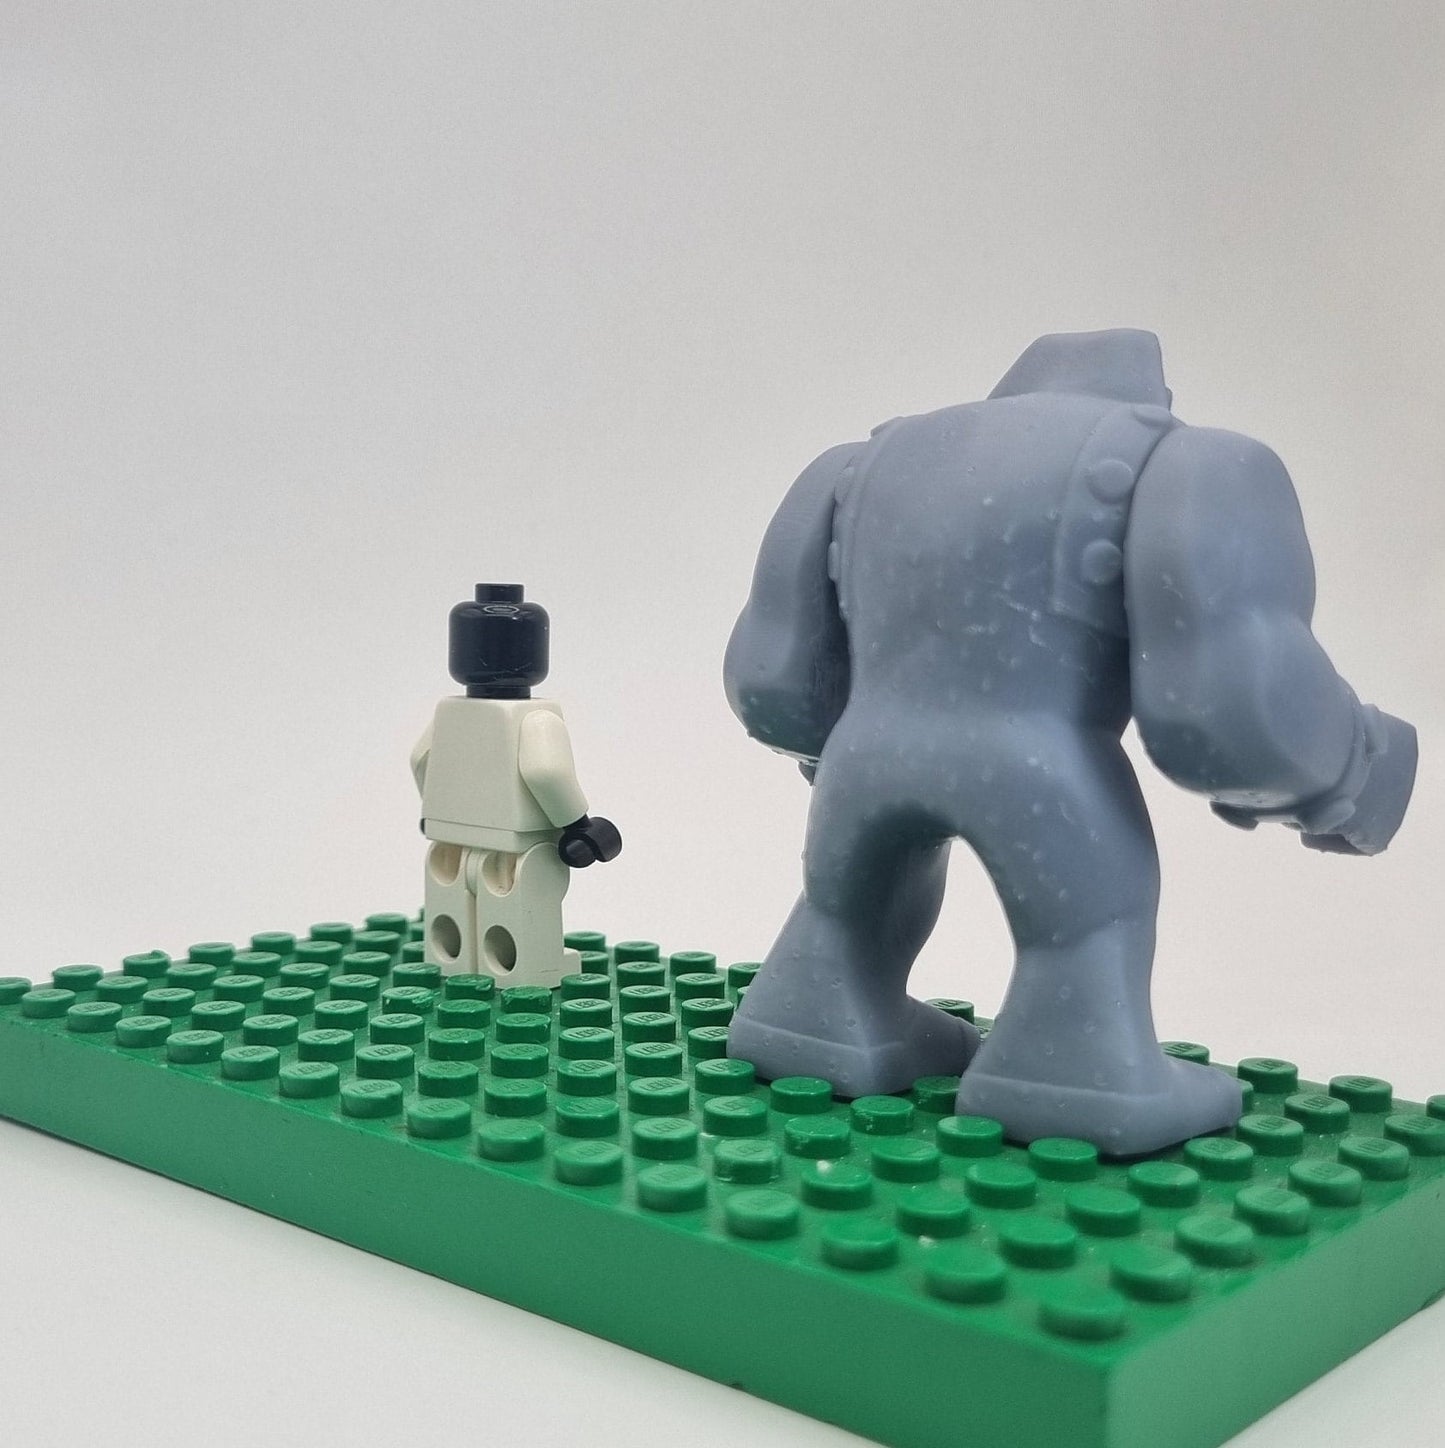 Custom 3D printed building toy teen heroes villain bigfig!